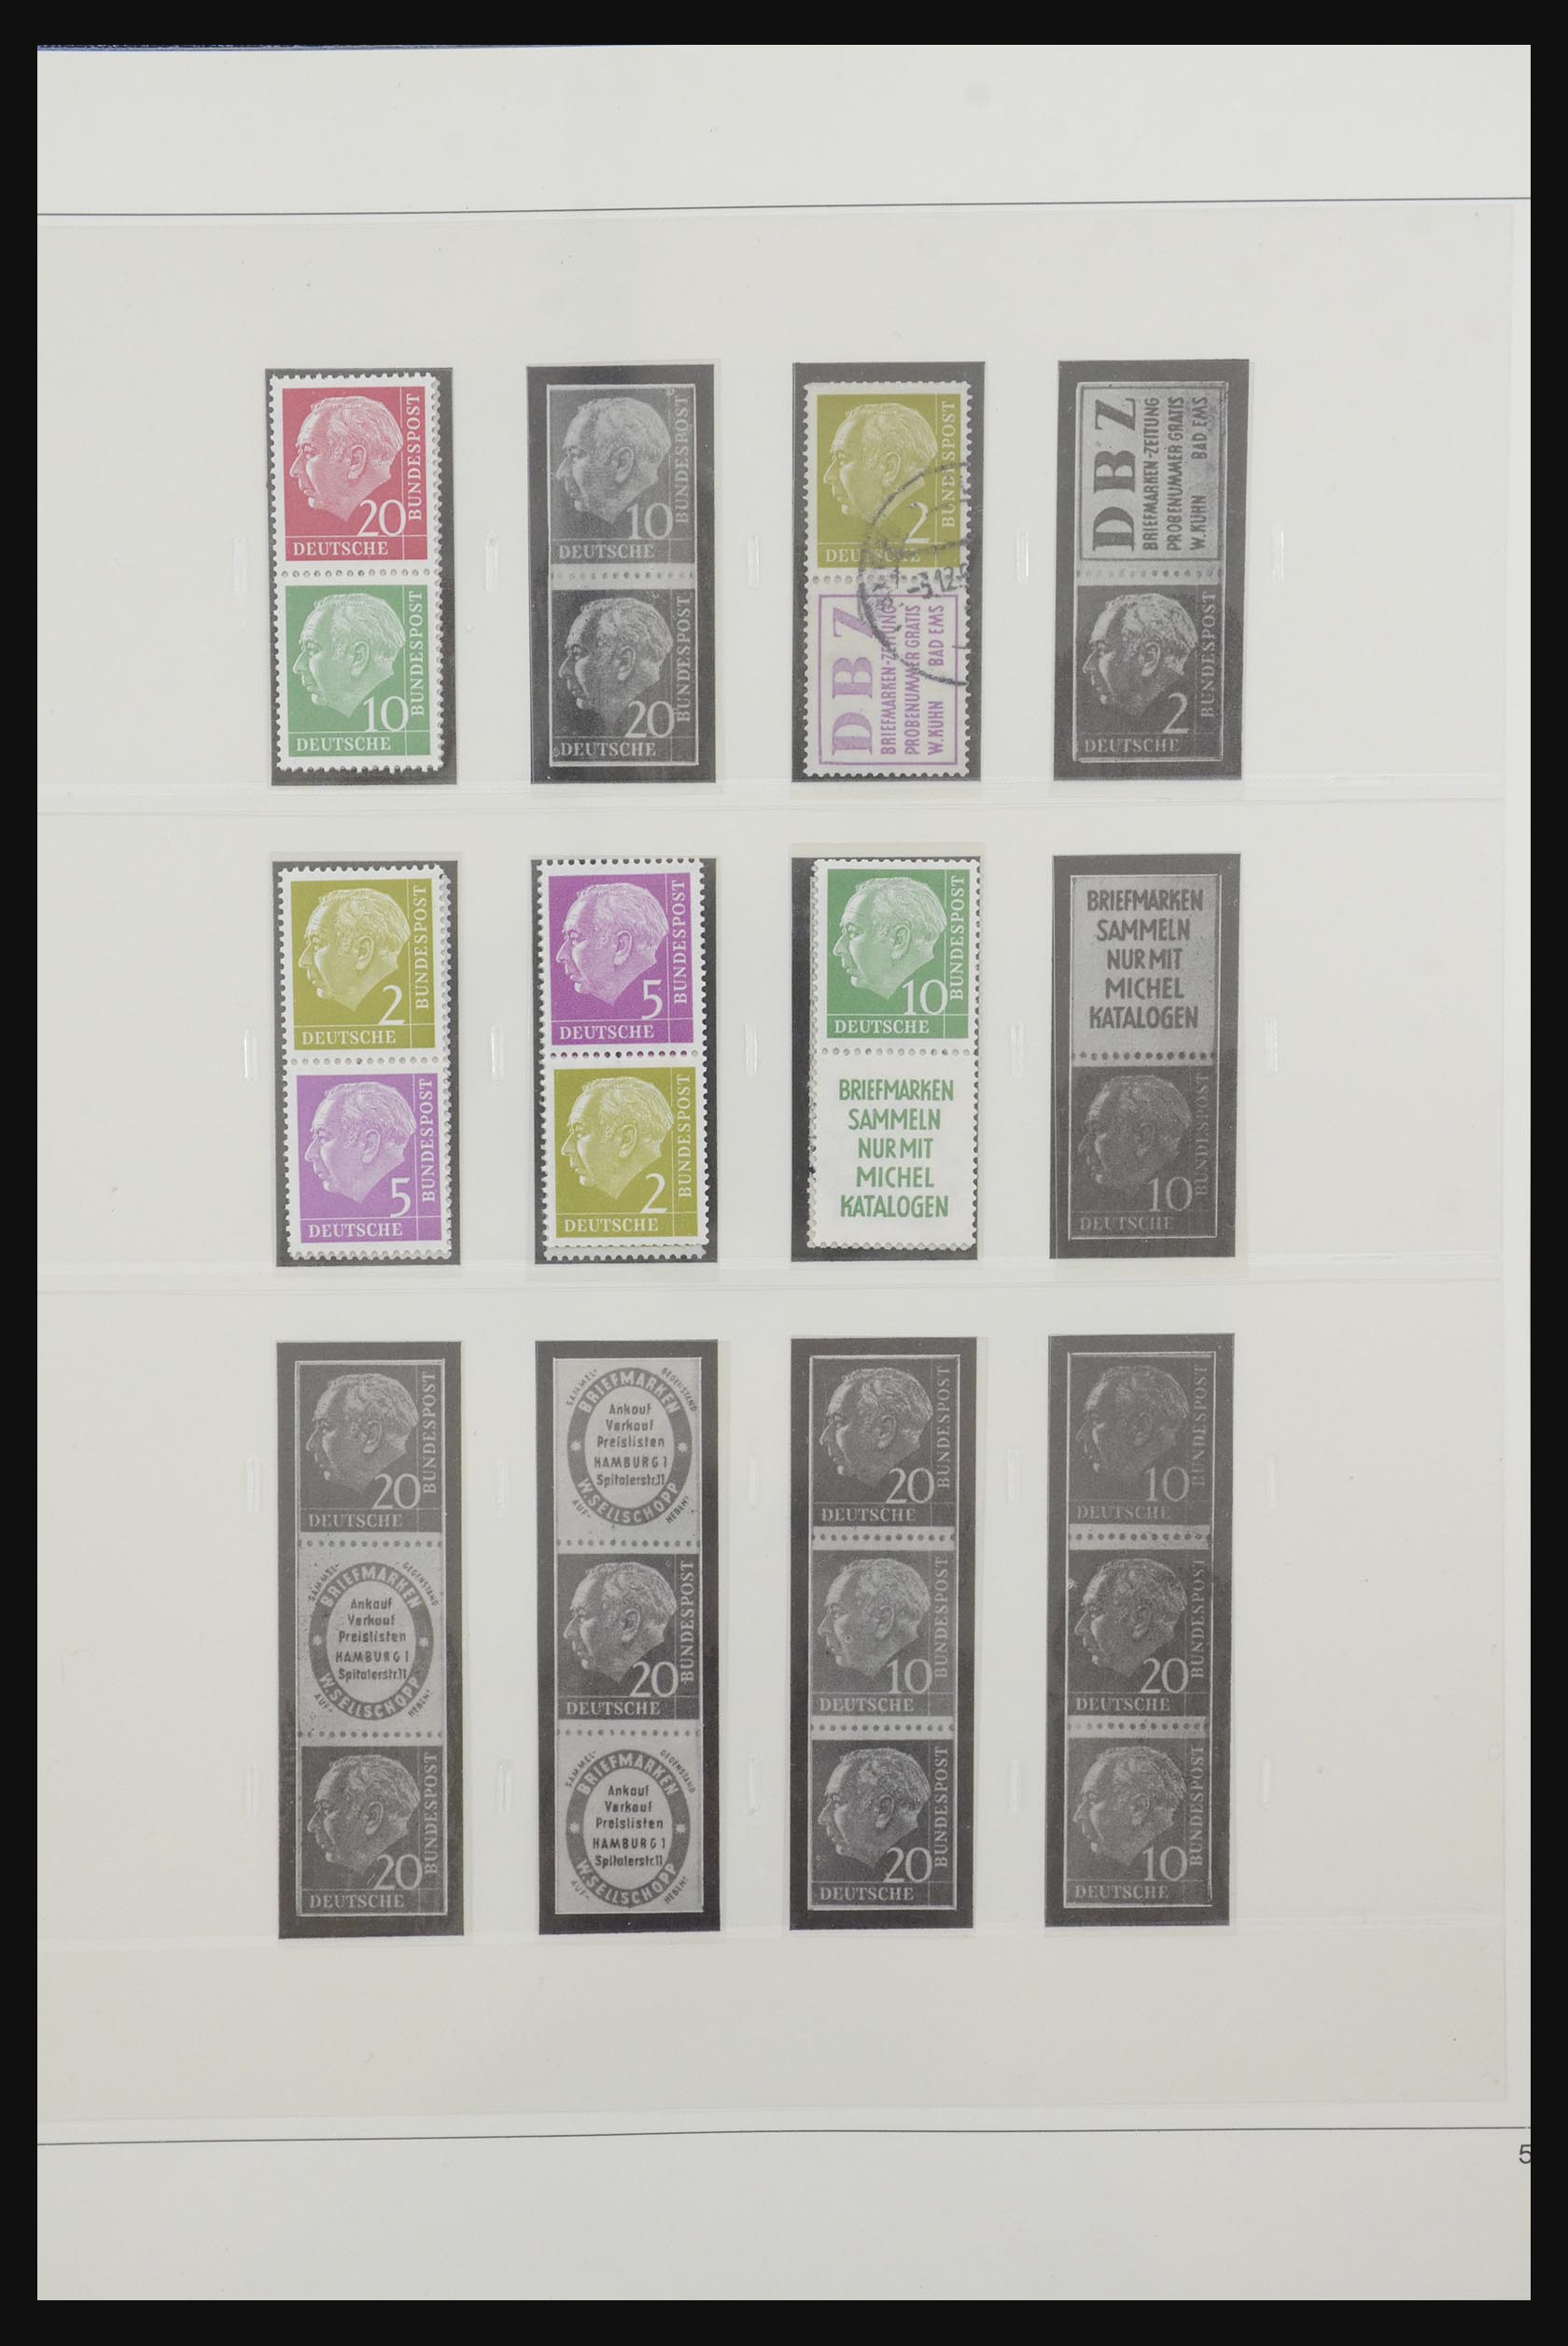 31842 005 - 31842 Bundespost combinaties 1951-2003.